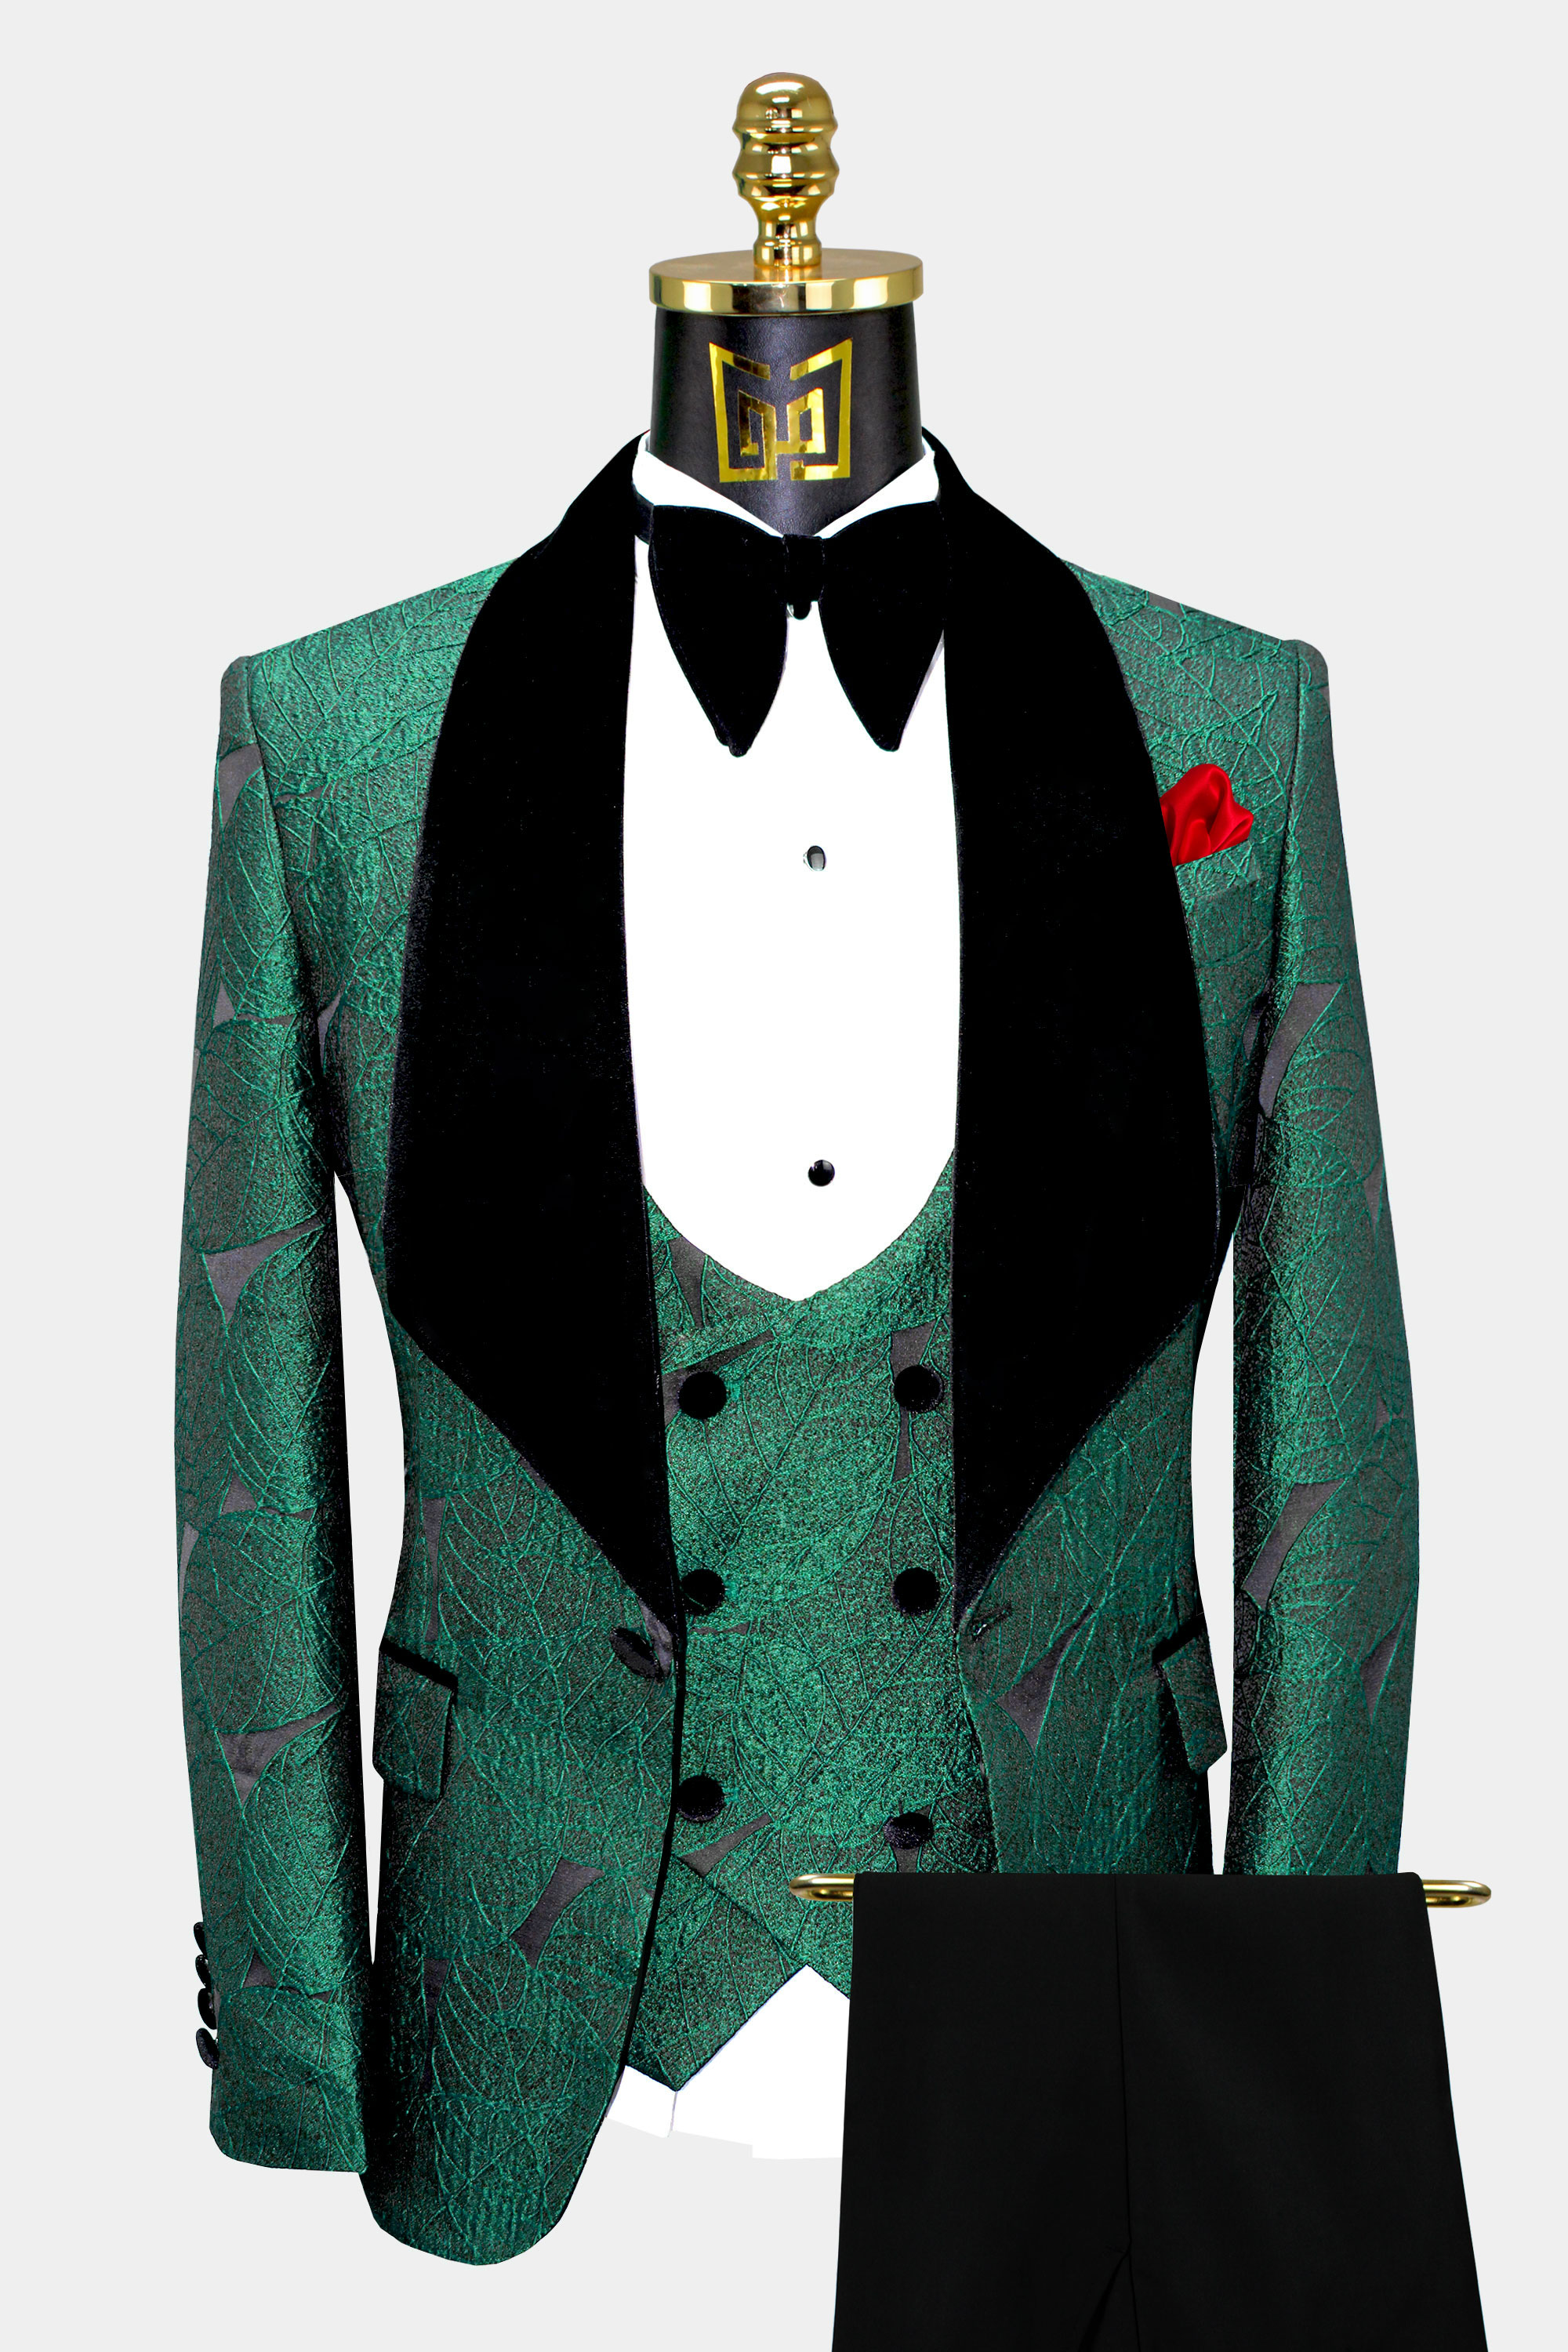 Mens-Emerald-Green-Tuxedo-Wedding-Groom-Prom-Suit-from-Gentlemansguru.com